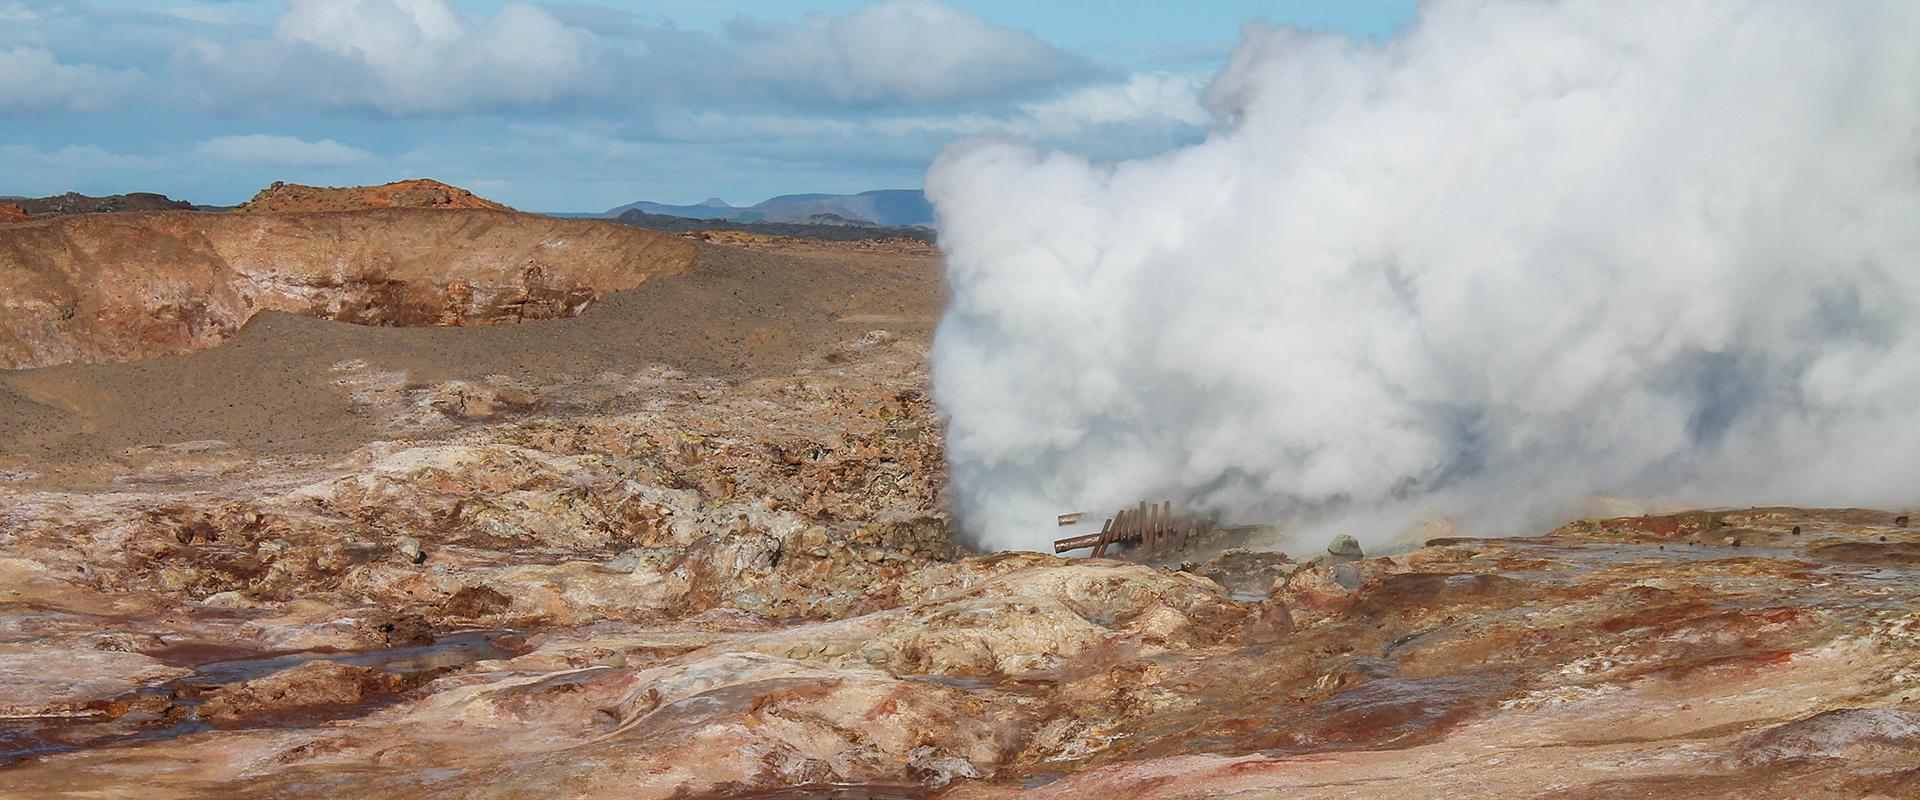 Geothermal hot springs, Iceland